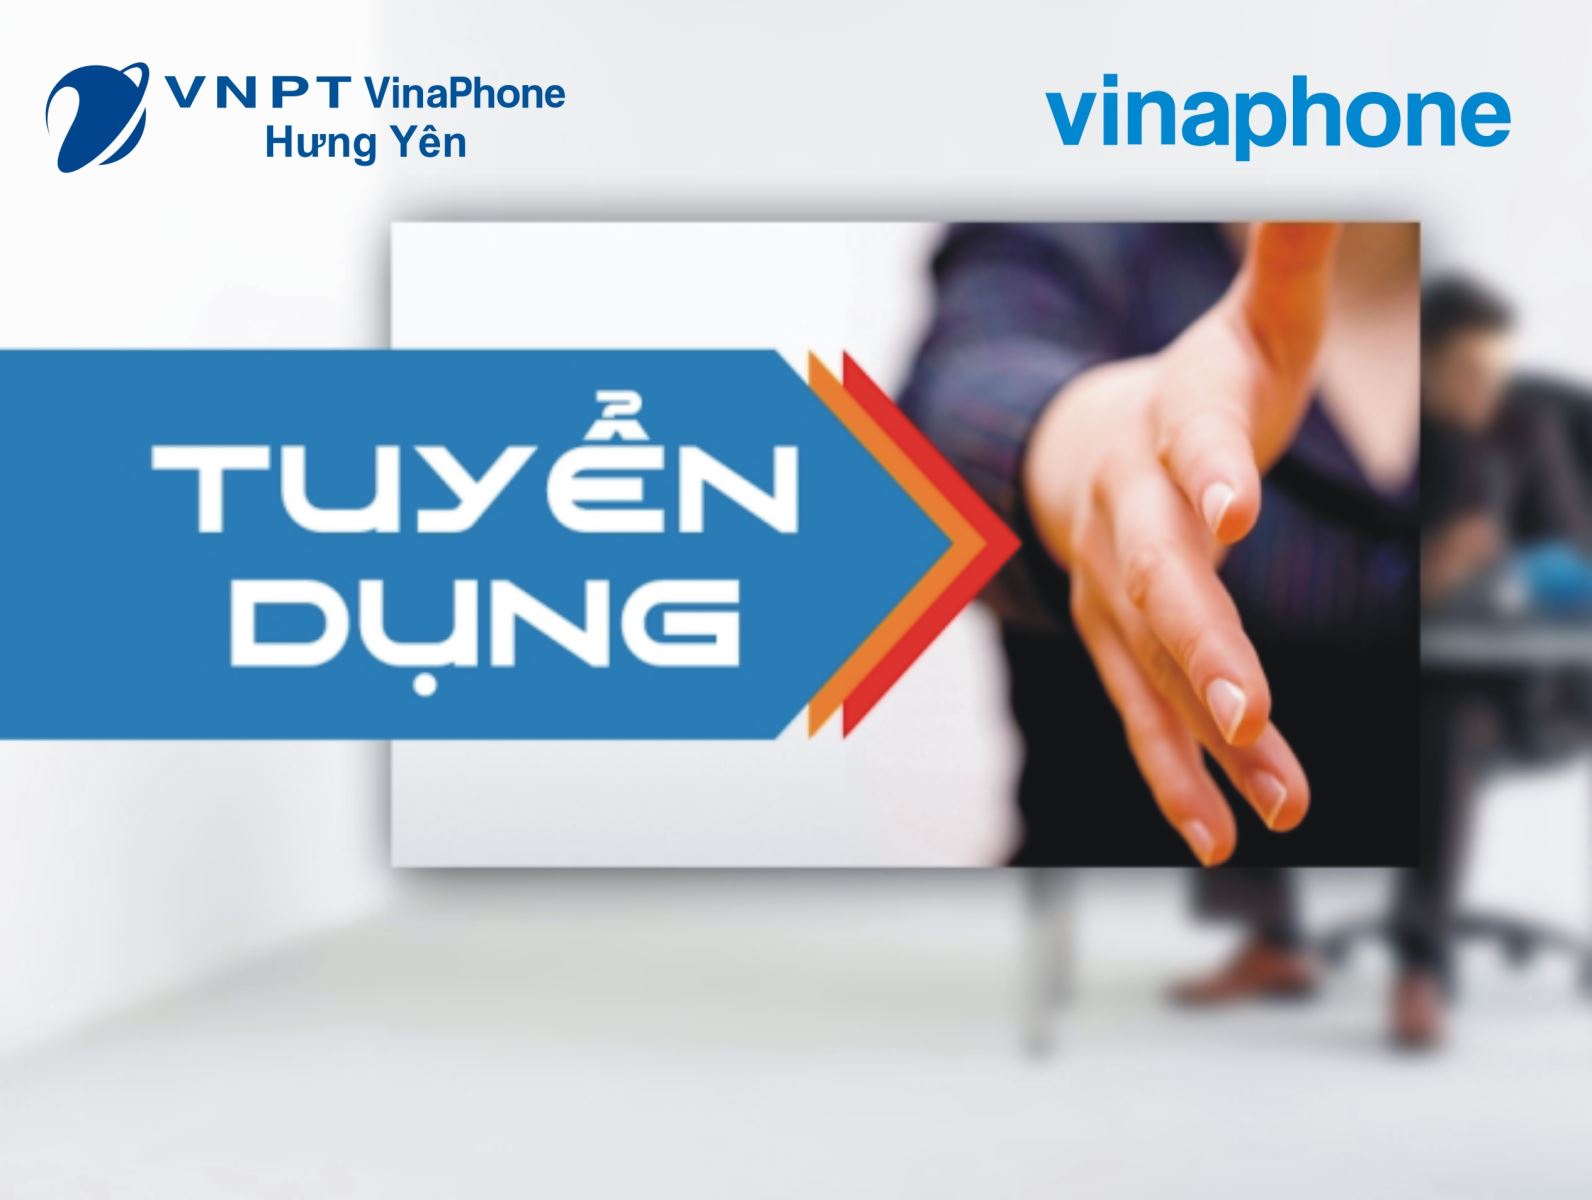 VNPT VinaPhone Hưng Yên tuyển dụng năm 2017